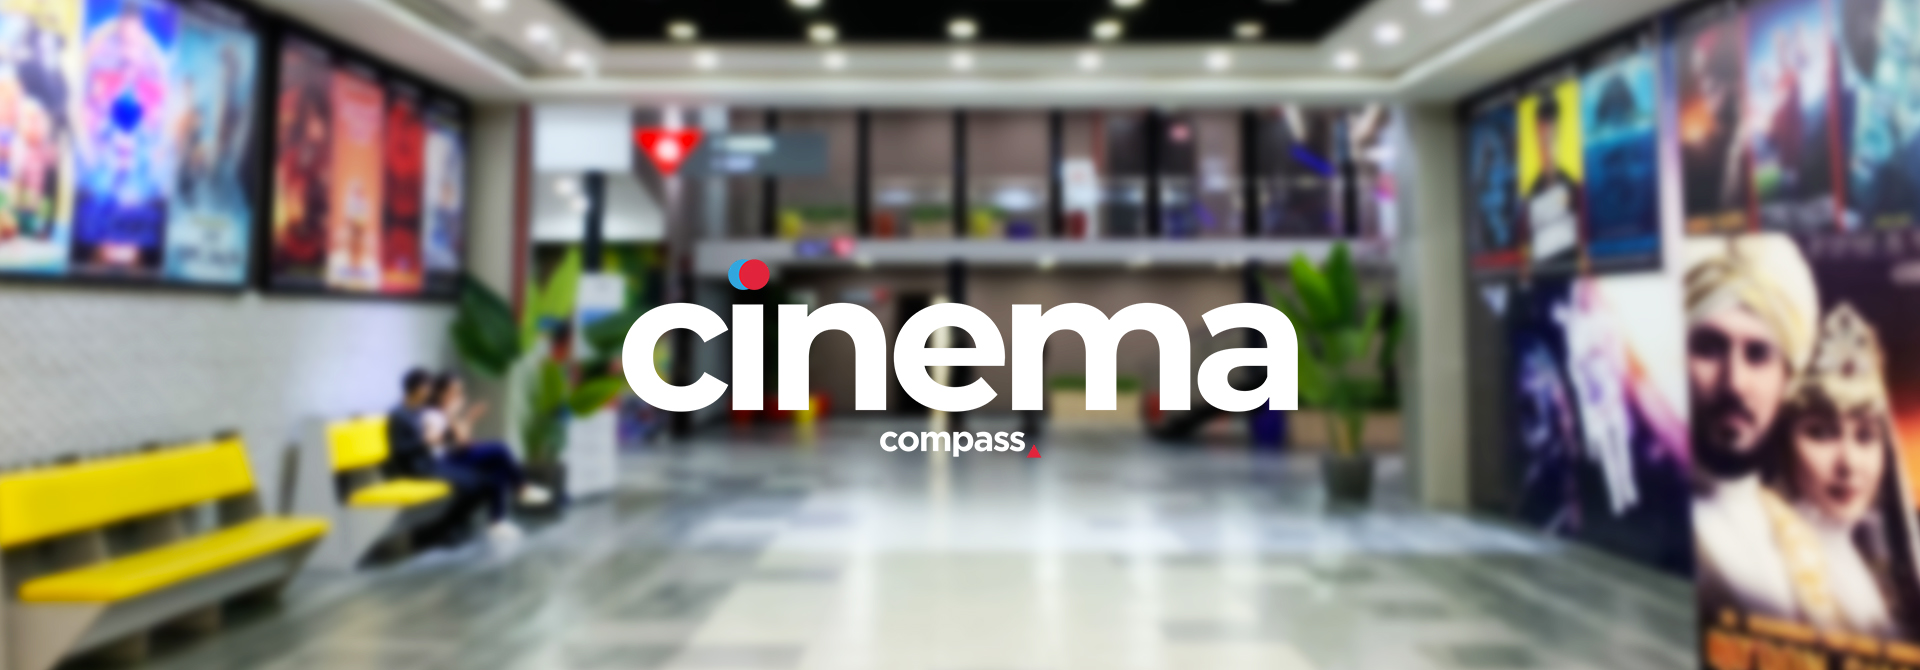 Кинотеатр «Compass Cinema - Vip зал» в Ташкенте - расписание фильмов, афиша кино, адрес, телефоны и другие контакты